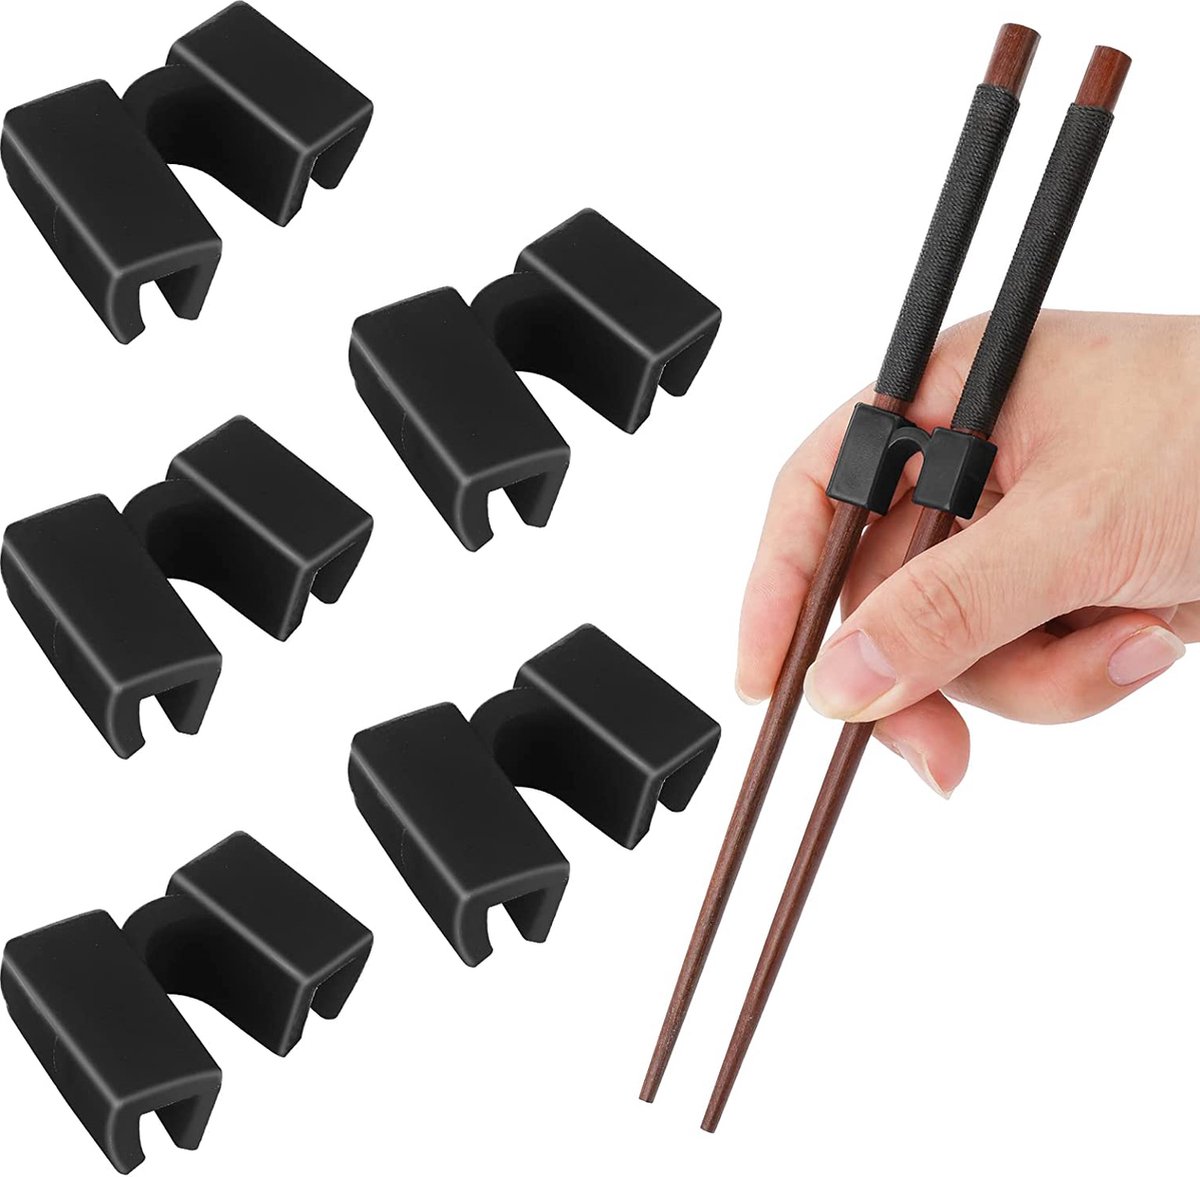 5 stuks Handige eetstokjes houder - sushi servies kinderen - hulpstuk herbruikbare stokjes - duurzaam - Chopstick Trainers - zwart Chopsticks helper - Merkloos